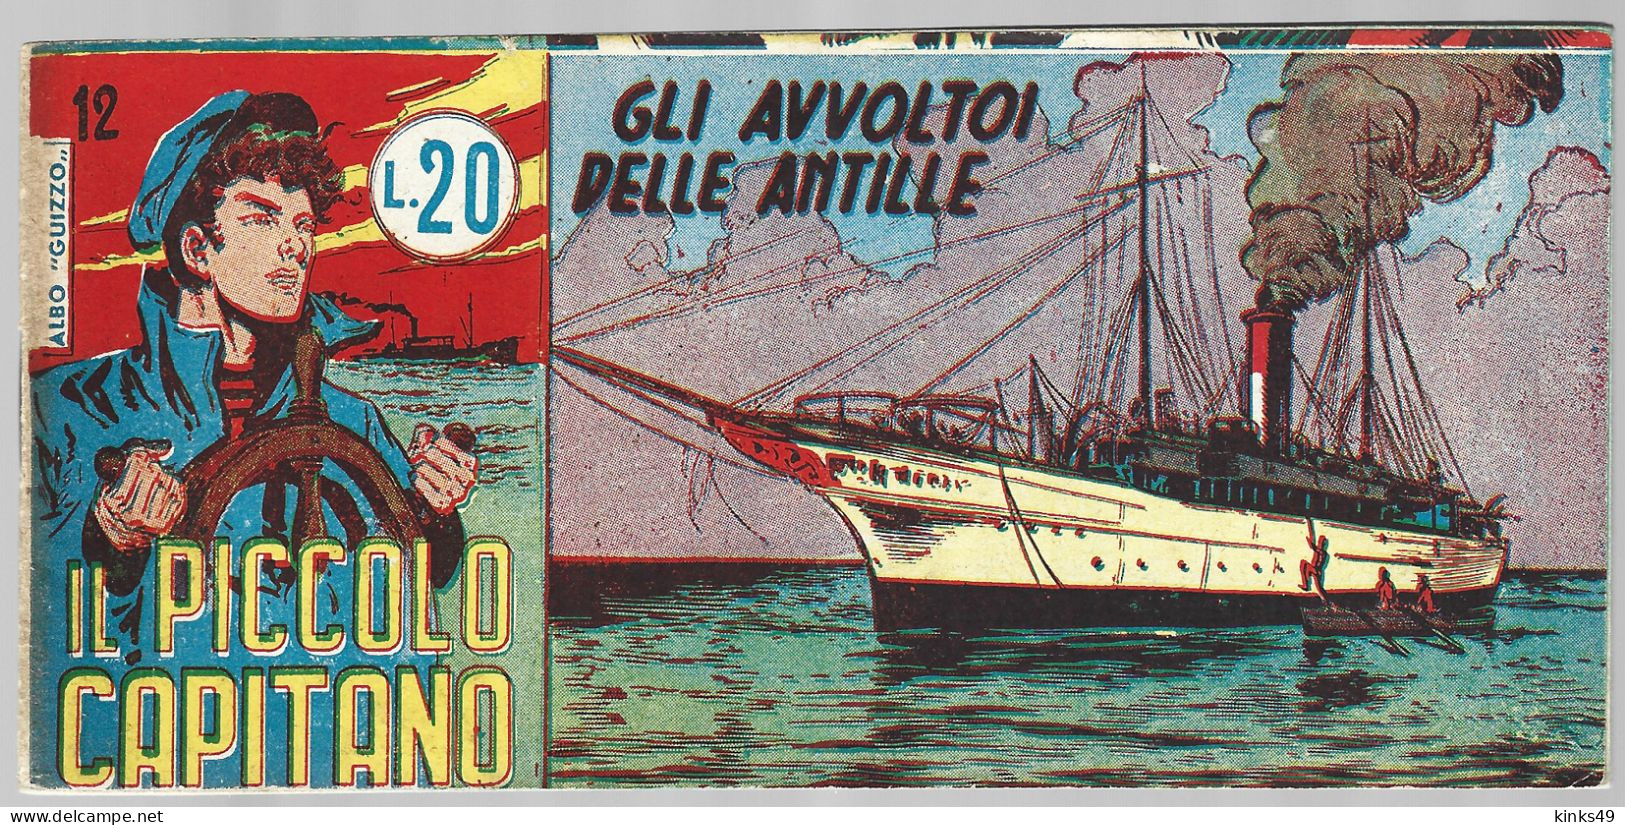 M246> IL PICCOLO CAPITANO - Tomasina - N° 12 < Gli Avvoltoi Delle Antille > 22 GENNAIO 1955 - Premières éditions